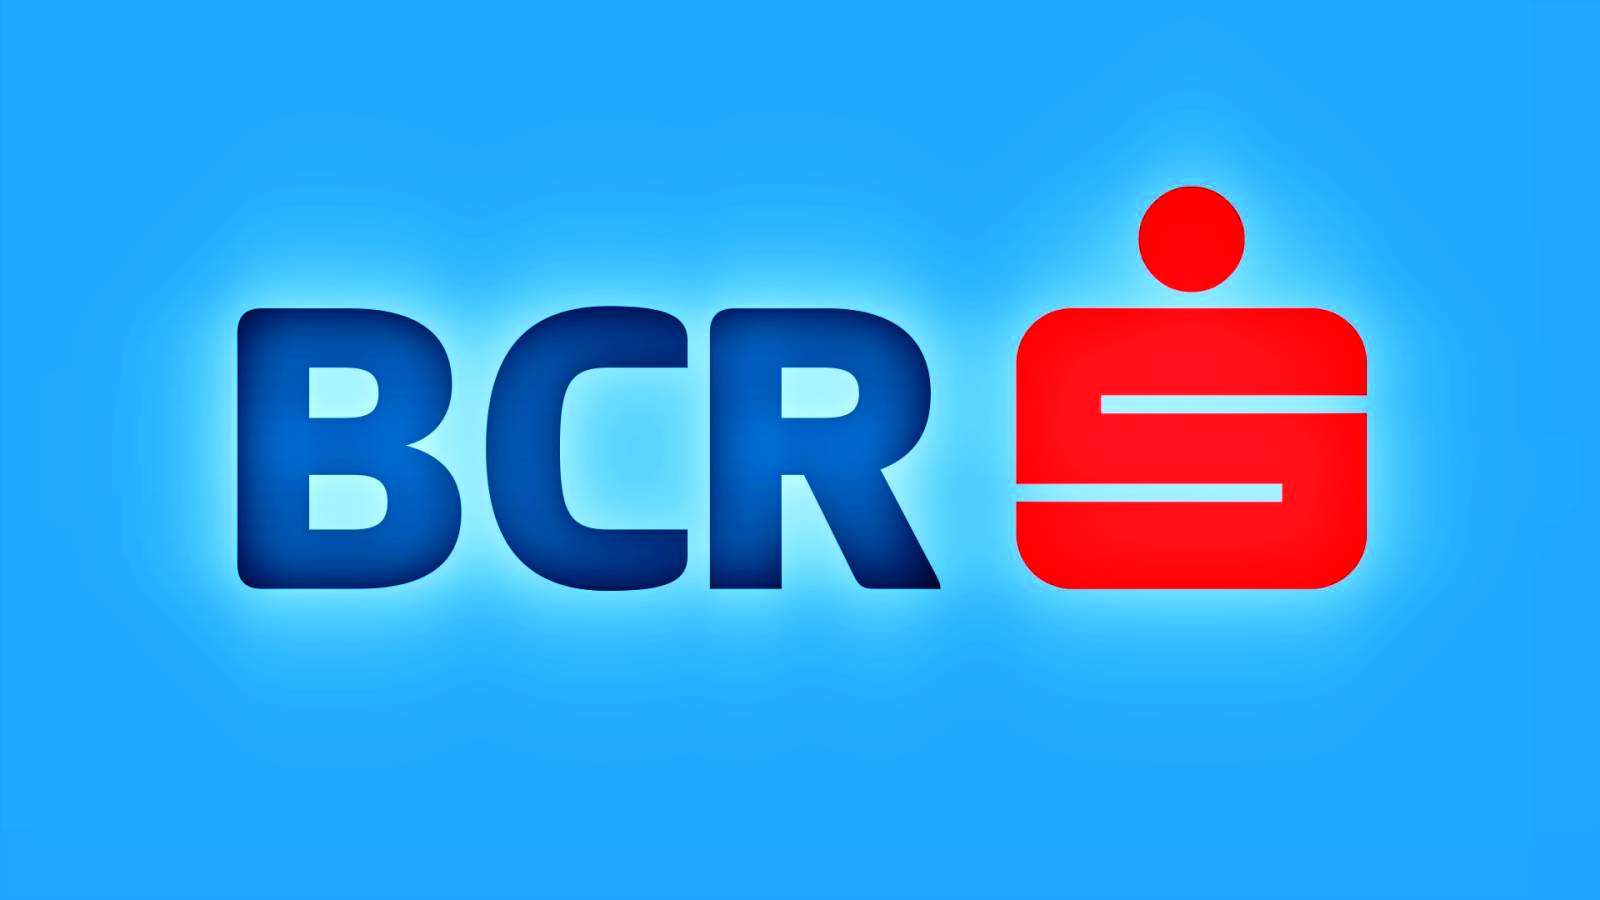 BCR Roemenië 2 BELANGRIJKE berichten verzonden naar Roemeense klanten